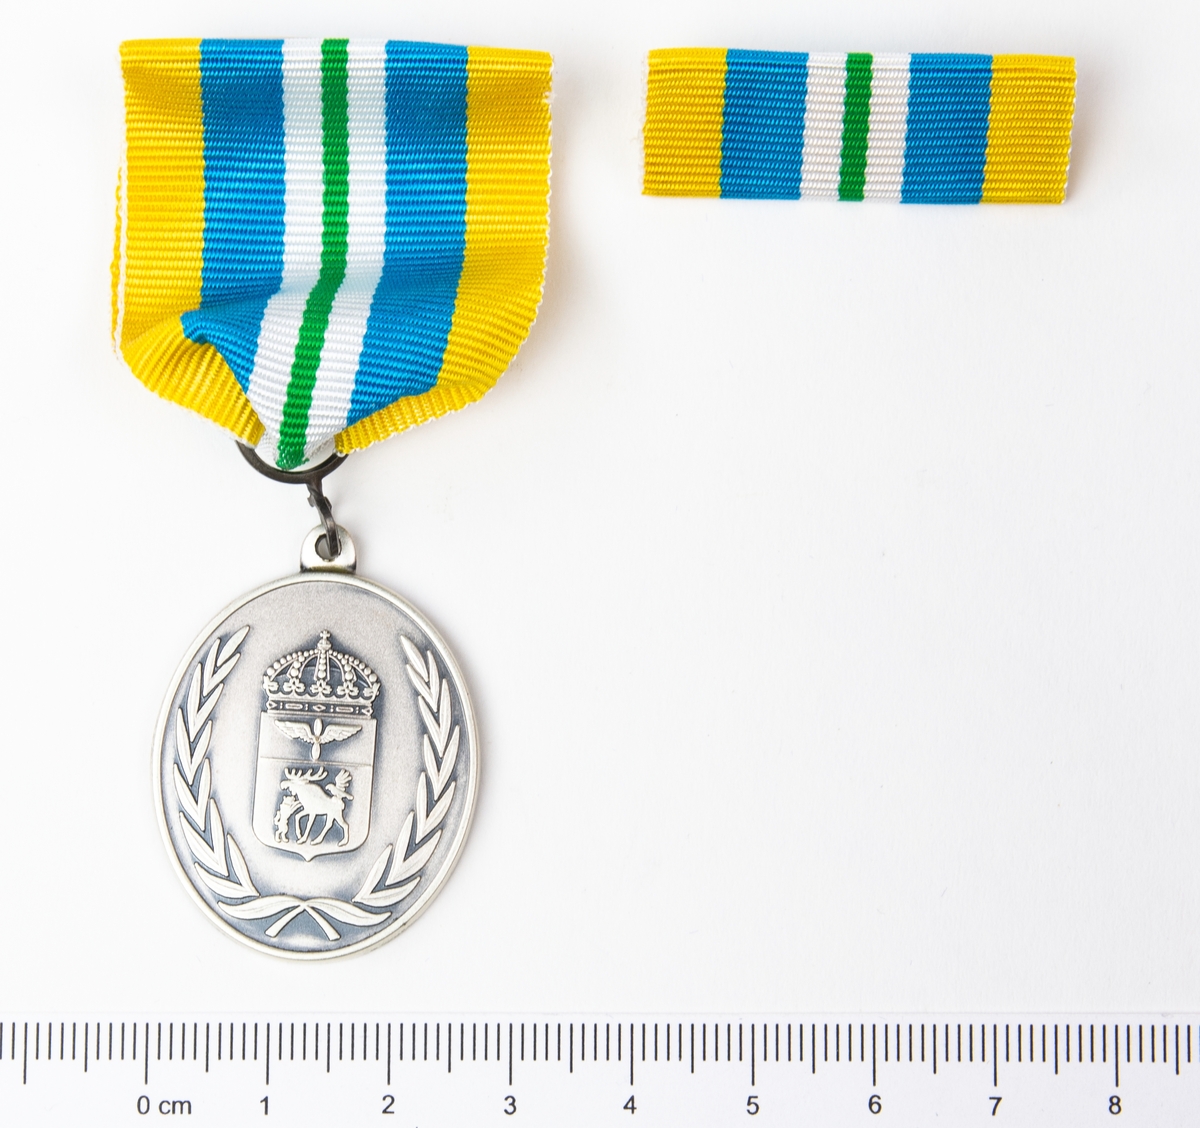 Jämtlands flygflottilj för förtjänstmedalj silver. 1 st medalj, 1 st utmärkelsetecken. Förvaras i originalask.